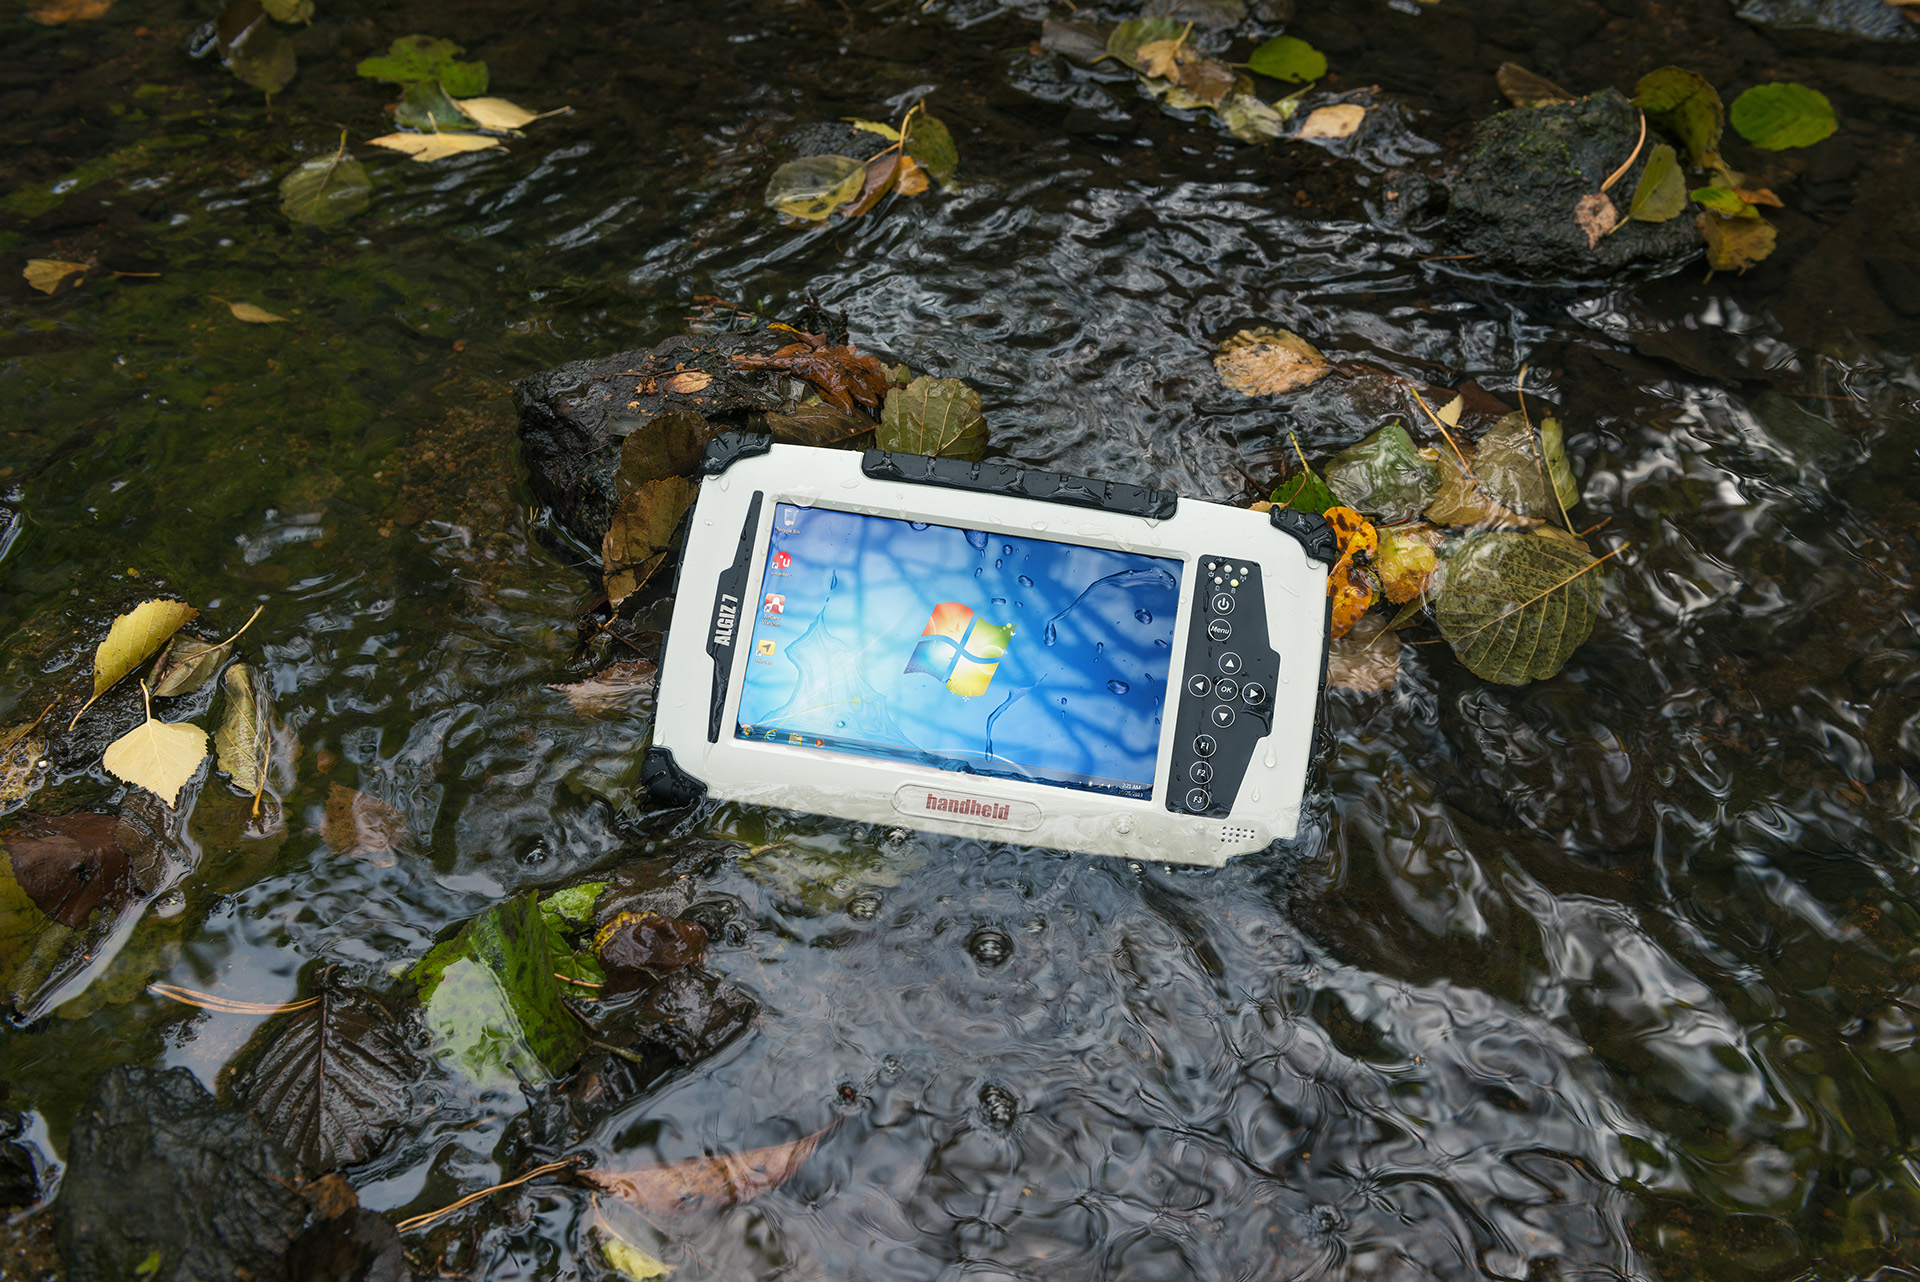 Algiz-7-rugged-tablet-outdoors-in-water-IP65.jpg